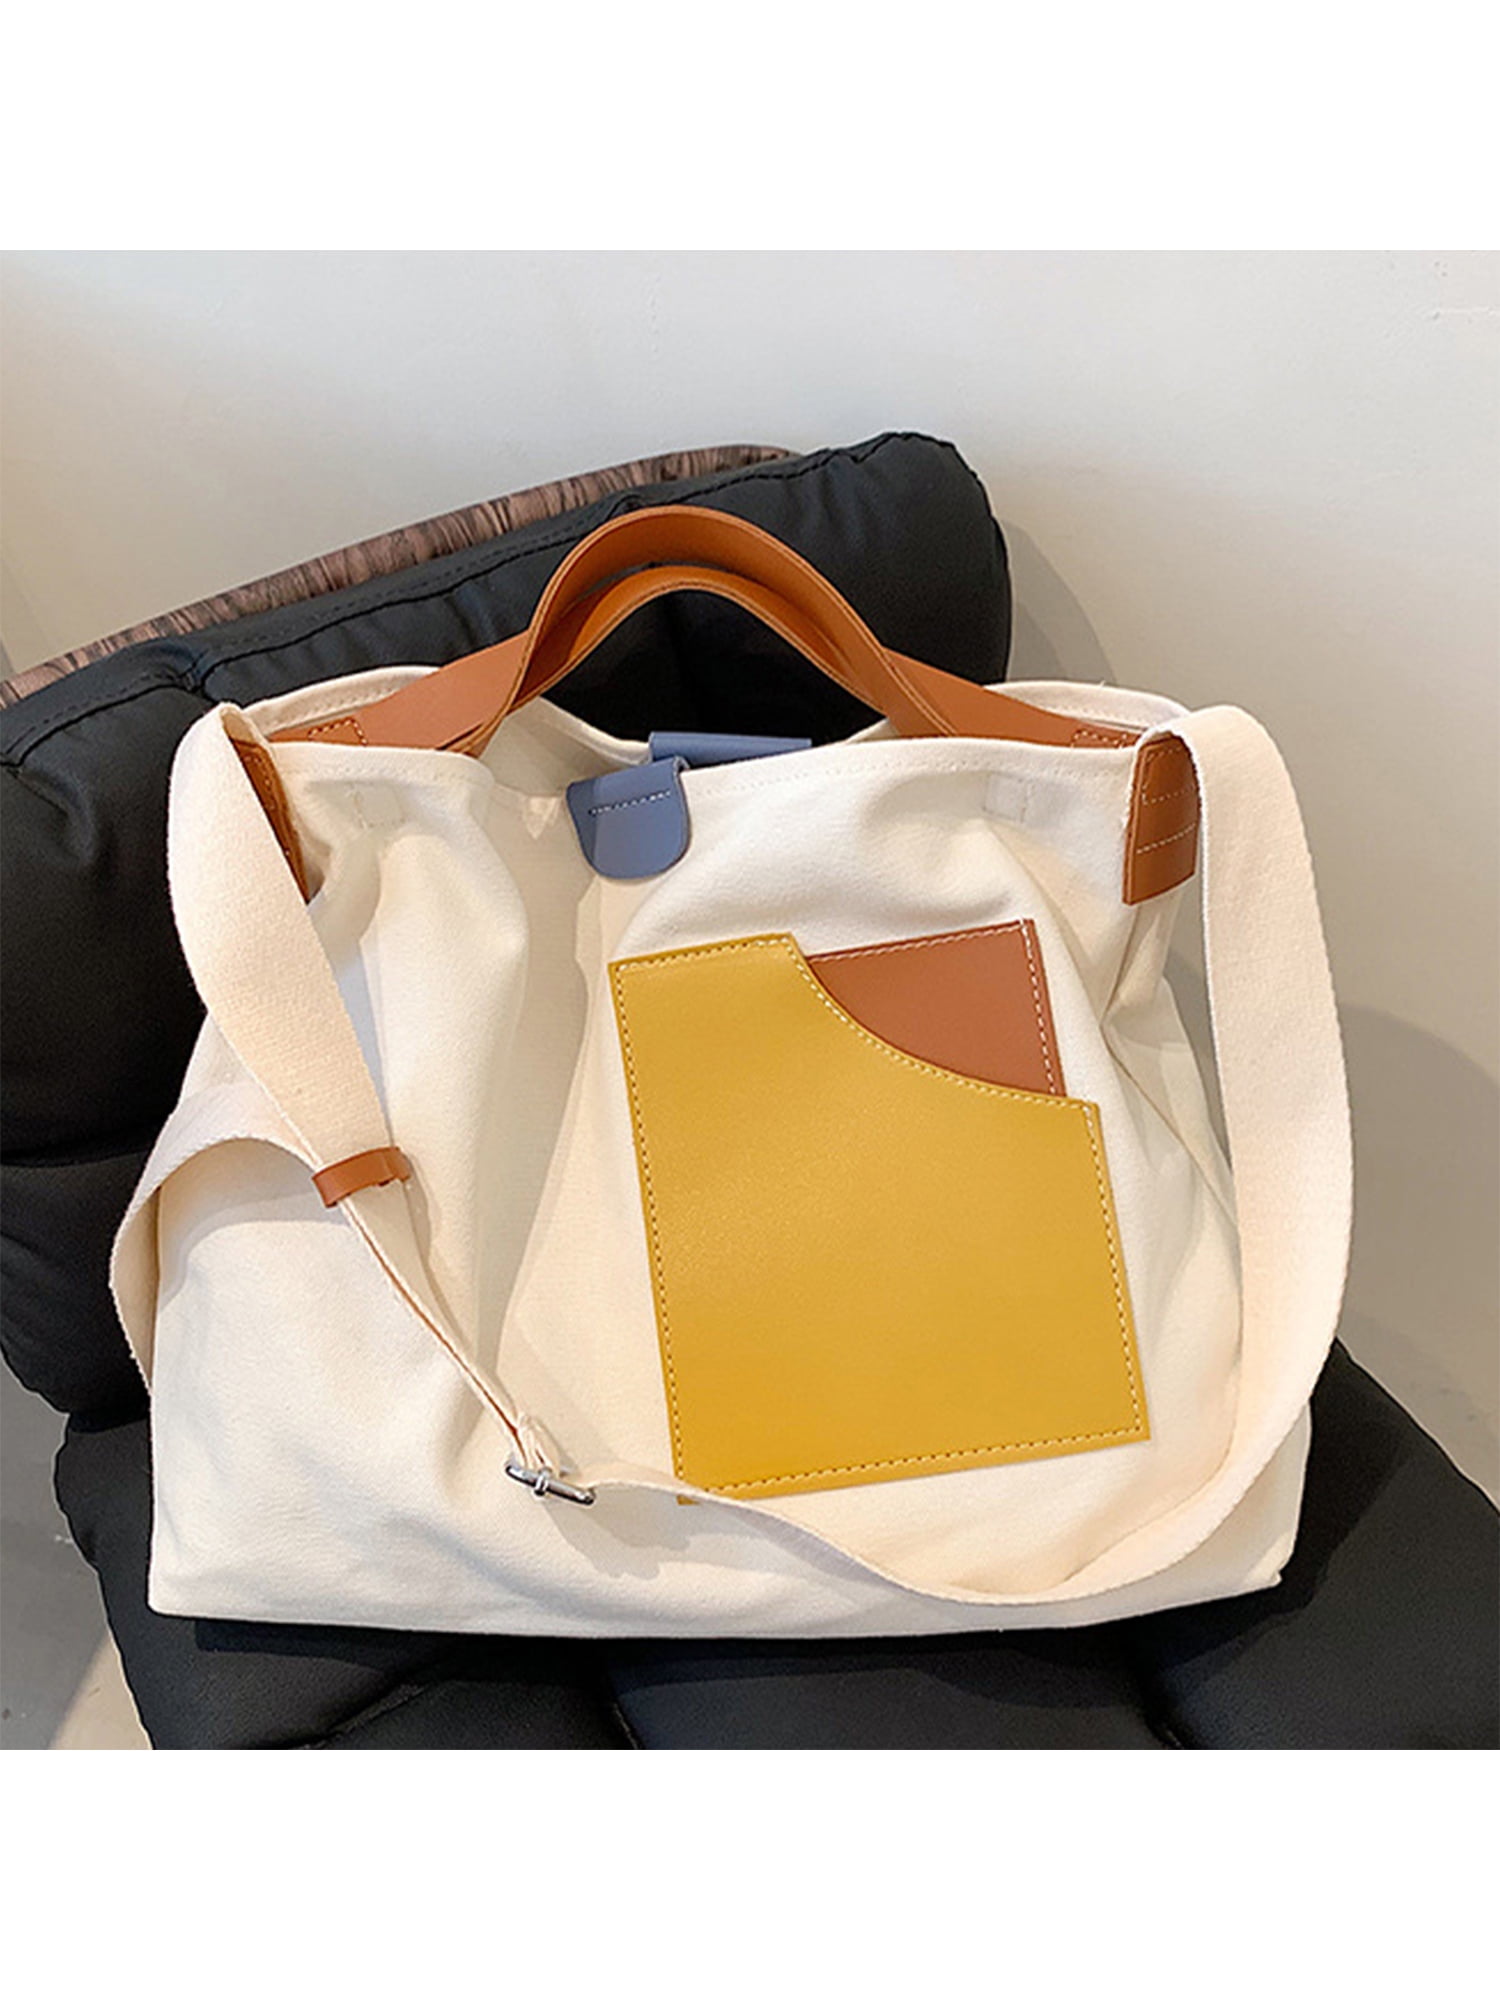 NYTRYD Purse Handbag Womens Ladies Shoulder Bag/Girls Tote Bag Office Bag  for Women Travel Top-Handle Purse Adjustable Shoulder Strap Bag (Yellow)